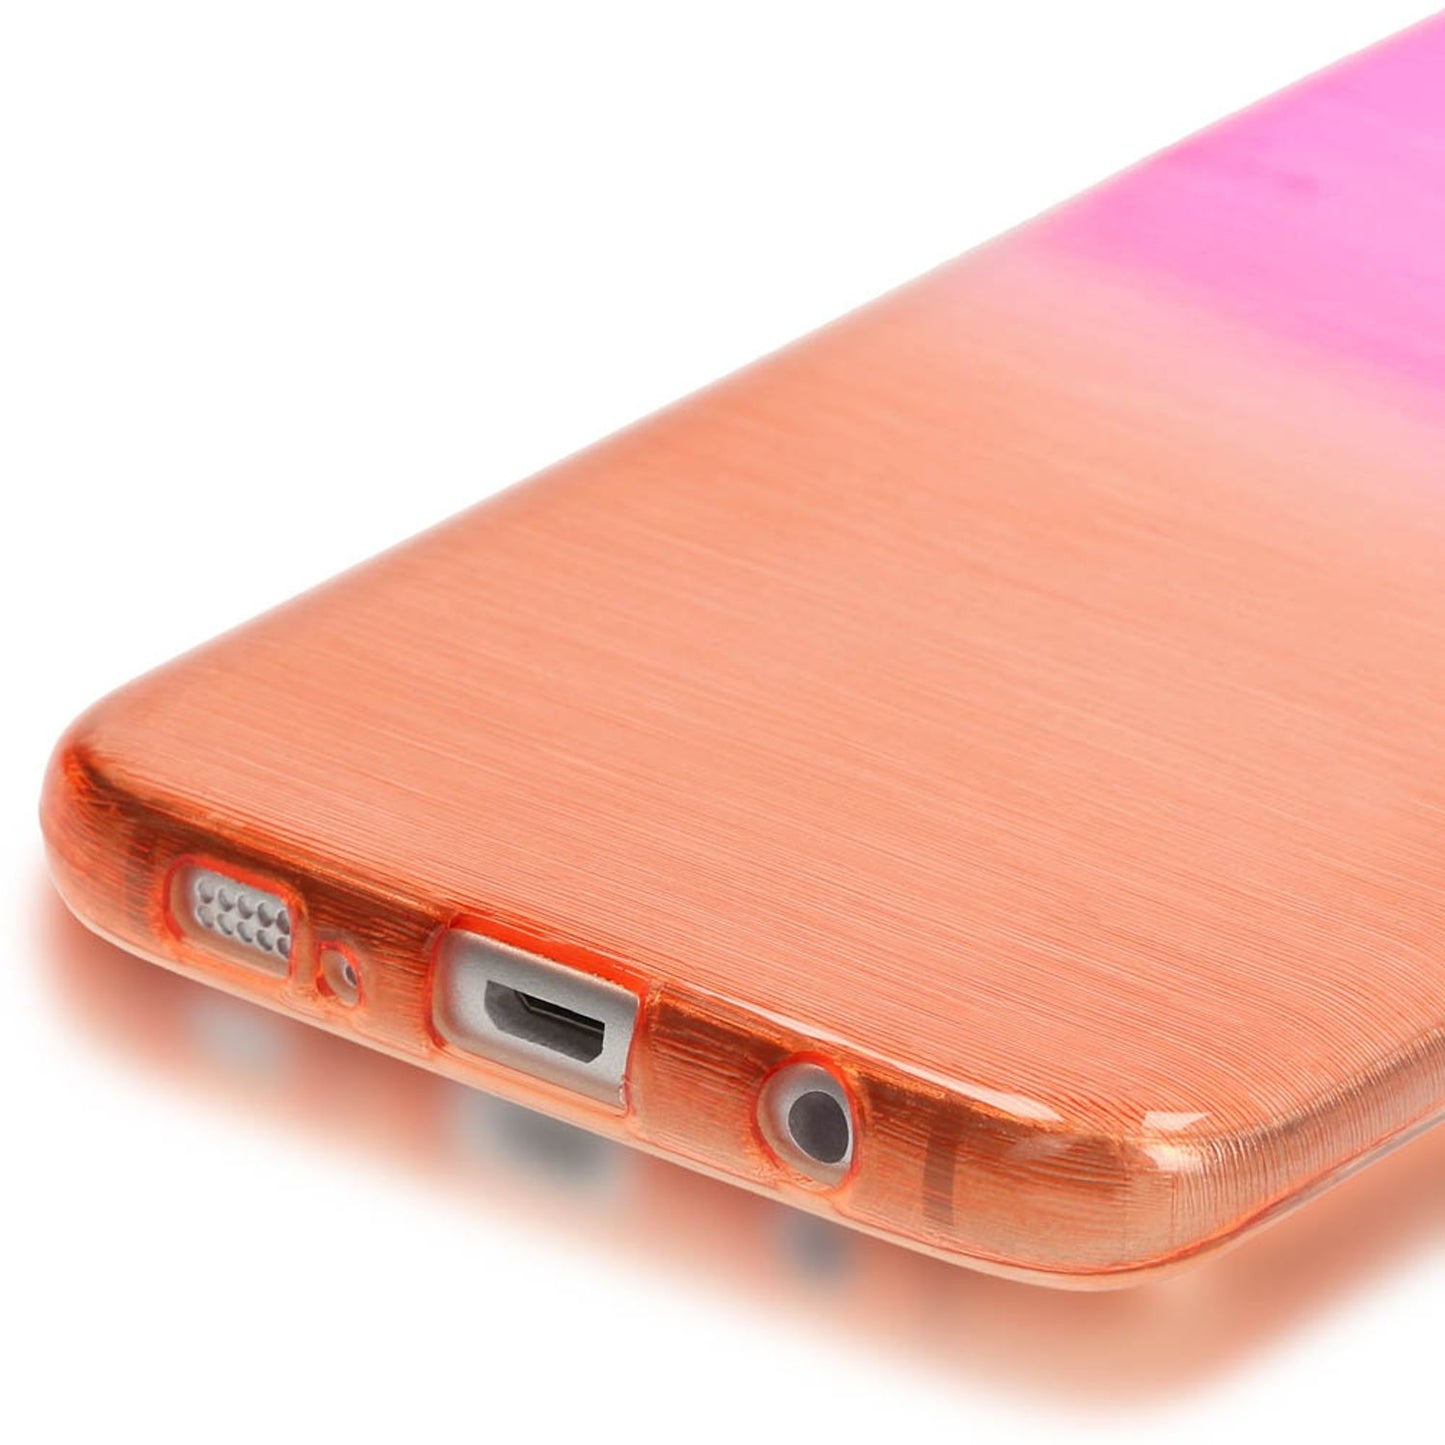 Samsung Galaxy S7 Edge Regenbogen Handy Hülle von NALIA, Slim Silikon Cover Case